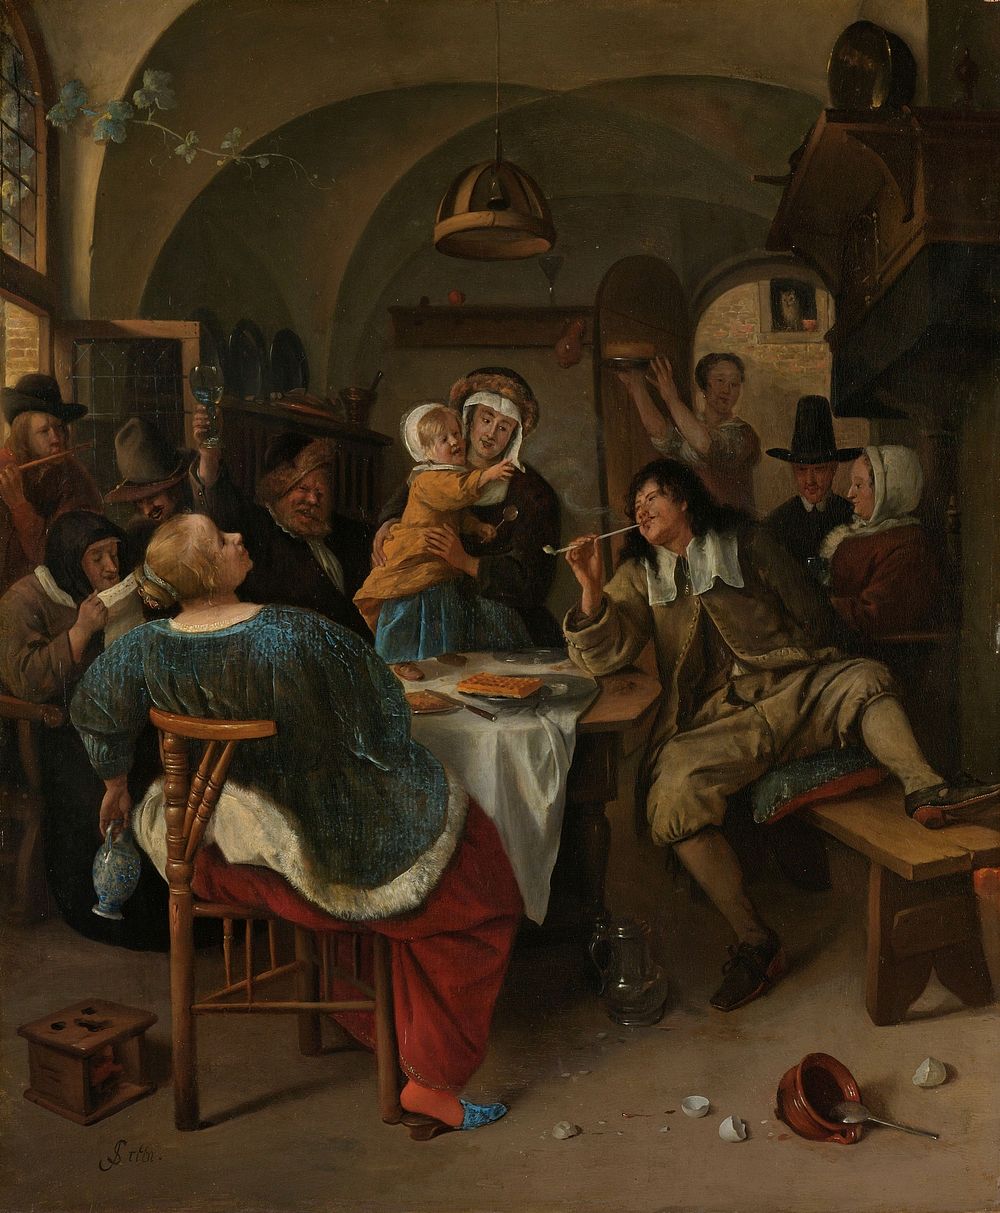 Family scene (1660 - 1679) by Jan Havicksz Steen